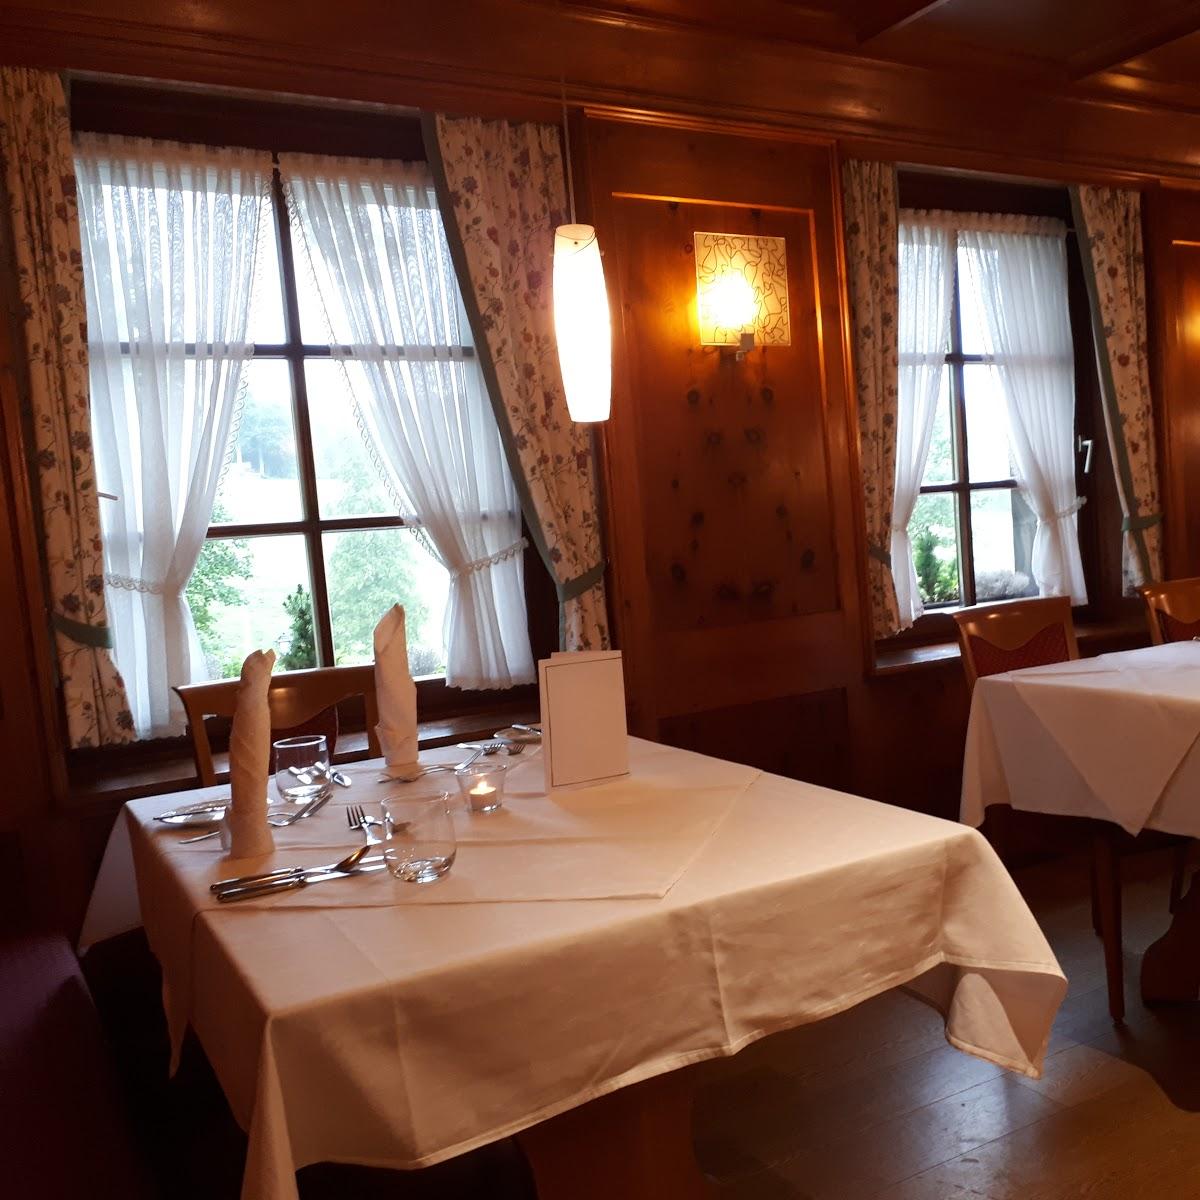 Restaurant "Hotel Schwarzwaldhof Gutzweiler KG" in  Hinterzarten